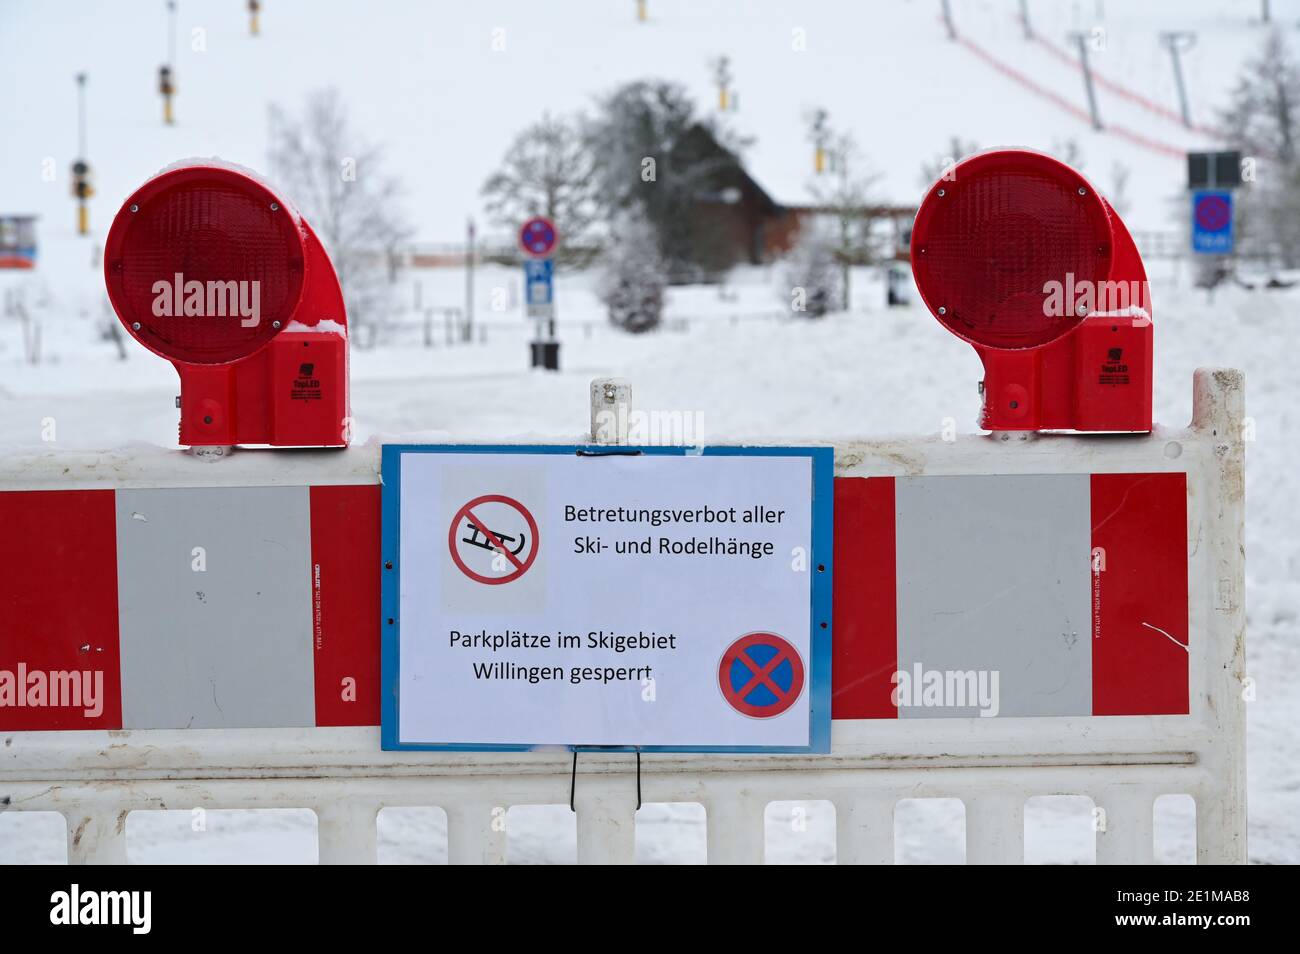 08 gennaio 2021, Hessen, Willingen: Un cartello con la scritta "Betretungsverbot aller Ski- und Rodelhänge Parkplätze im Skigebiet Willingen gesperrt" è apposto su una barriera di fronte ad un parcheggio, alla funivia e alle piste da sci. Nella località di sport invernali, il divieto di accedere alle piste da sci e alle piste per slittino è in vigore da questo venerdì a causa della pandemia di Corona. Il divieto è stato innescato dalla situazione lo scorso fine settimana: Dopo che la regione degli sport invernali di Winterberg, nella vicina Renania settentrionale-Vestfalia, aveva chiuso piste e parcheggi, migliaia di escursionisti si erano riversati nel nord dell'Assia. P. Foto Stock